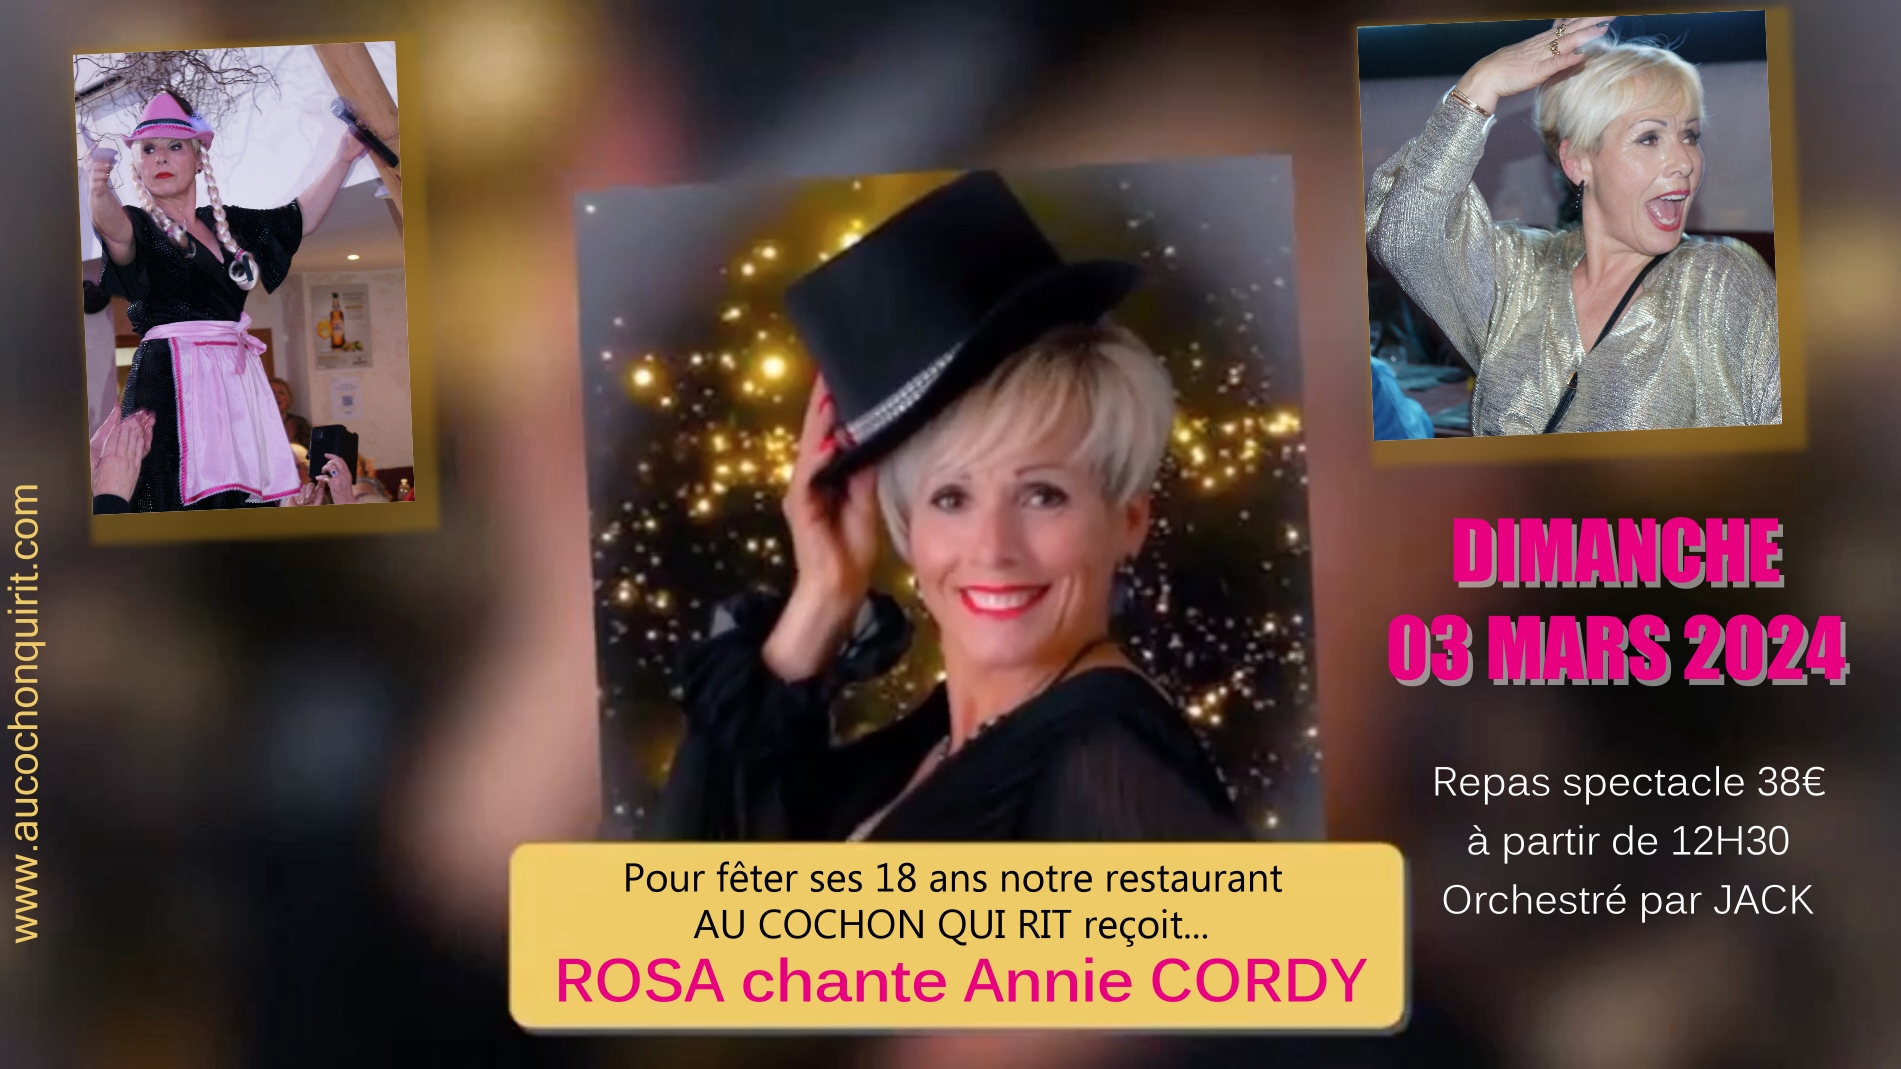 Dimanche 03 mars 2024 / anniversaire du cochon qui rit 18 ans / repas spectacle ROSA chante Annie CORDY cliquez ici pour plus d’infos et voir la vidéo.